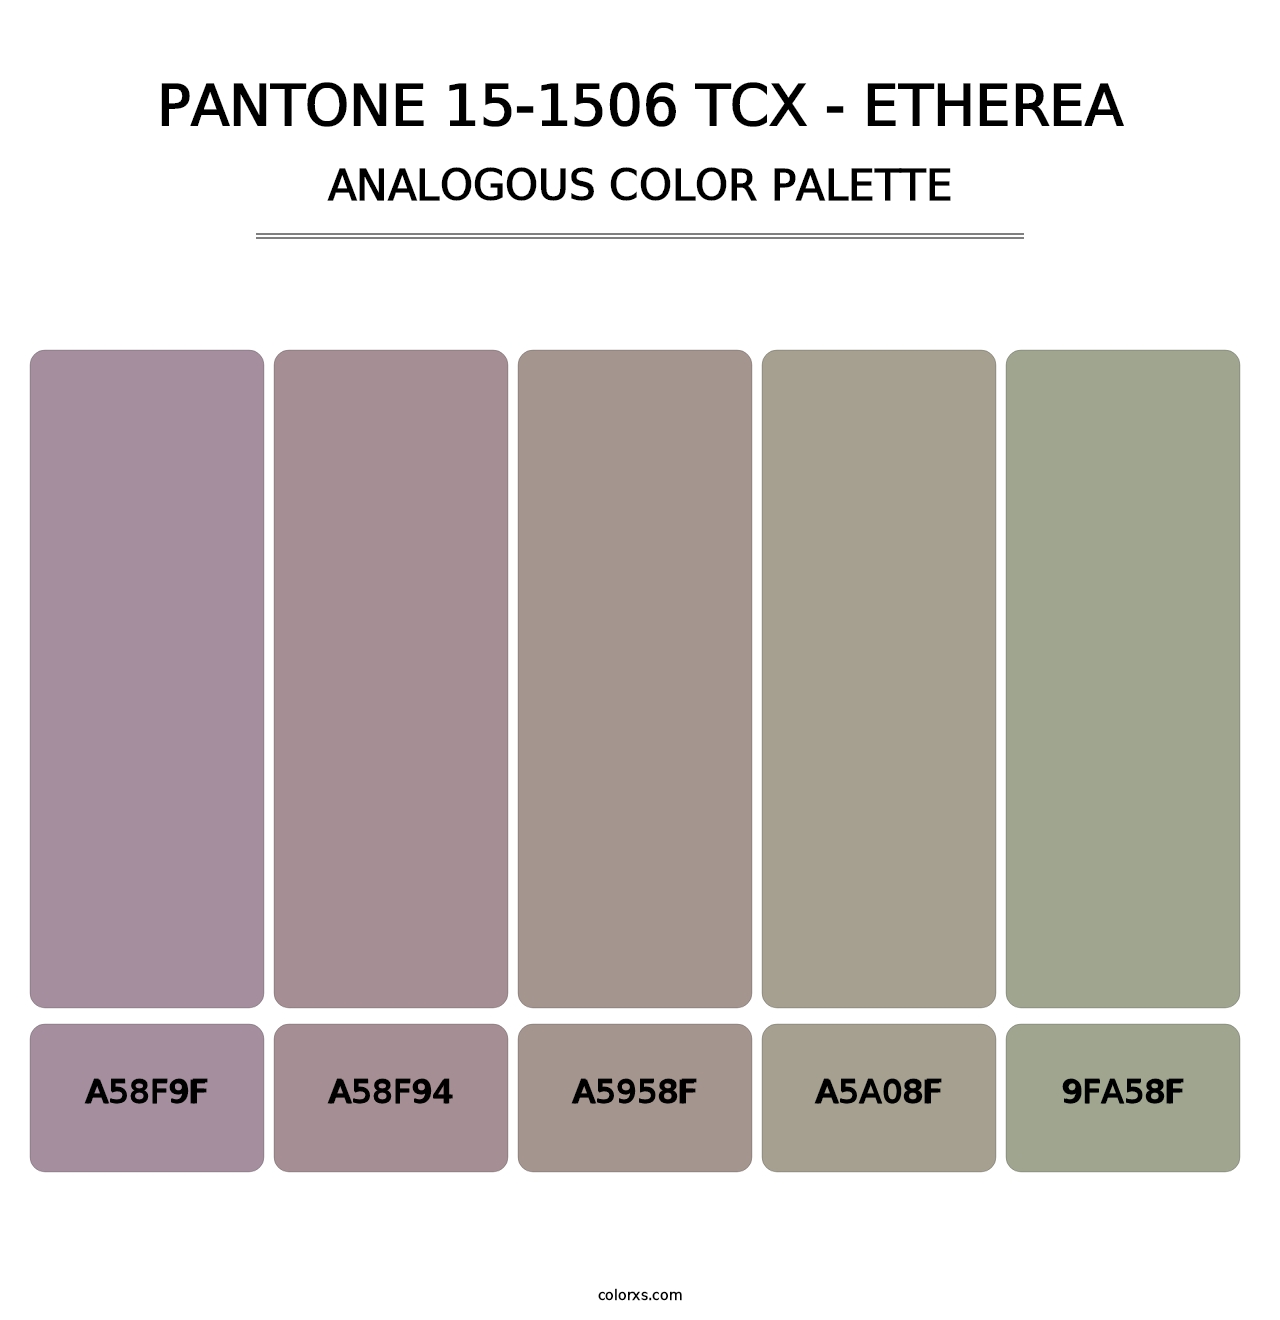 PANTONE 15-1506 TCX - Etherea - Analogous Color Palette